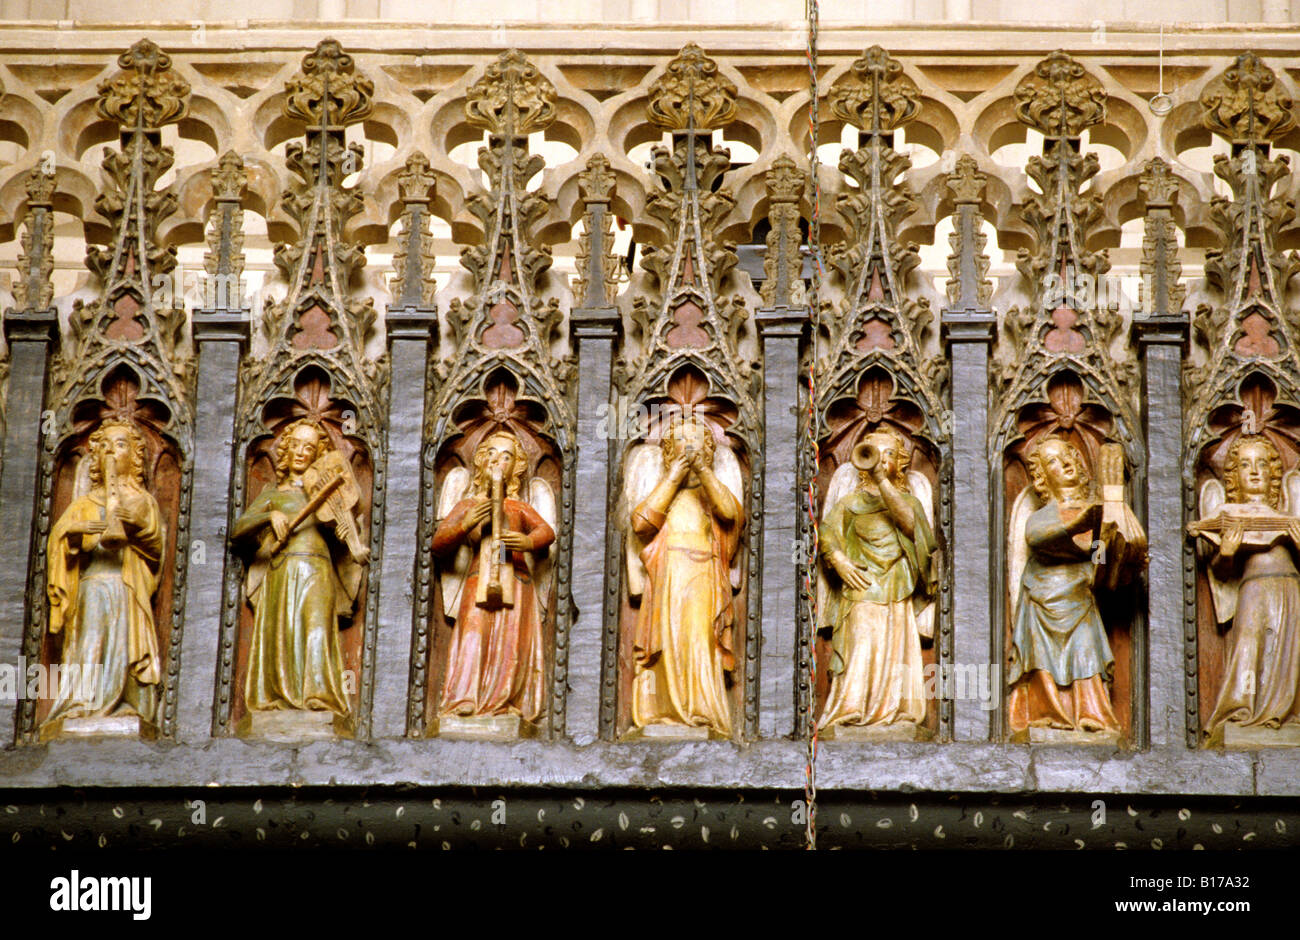 Exeter Kathedrale Spielleute Galerie Musikinstrumente innen Musiker Engel englischen mittelalterlichen schnitzen Figuren Geschichte Stockfoto